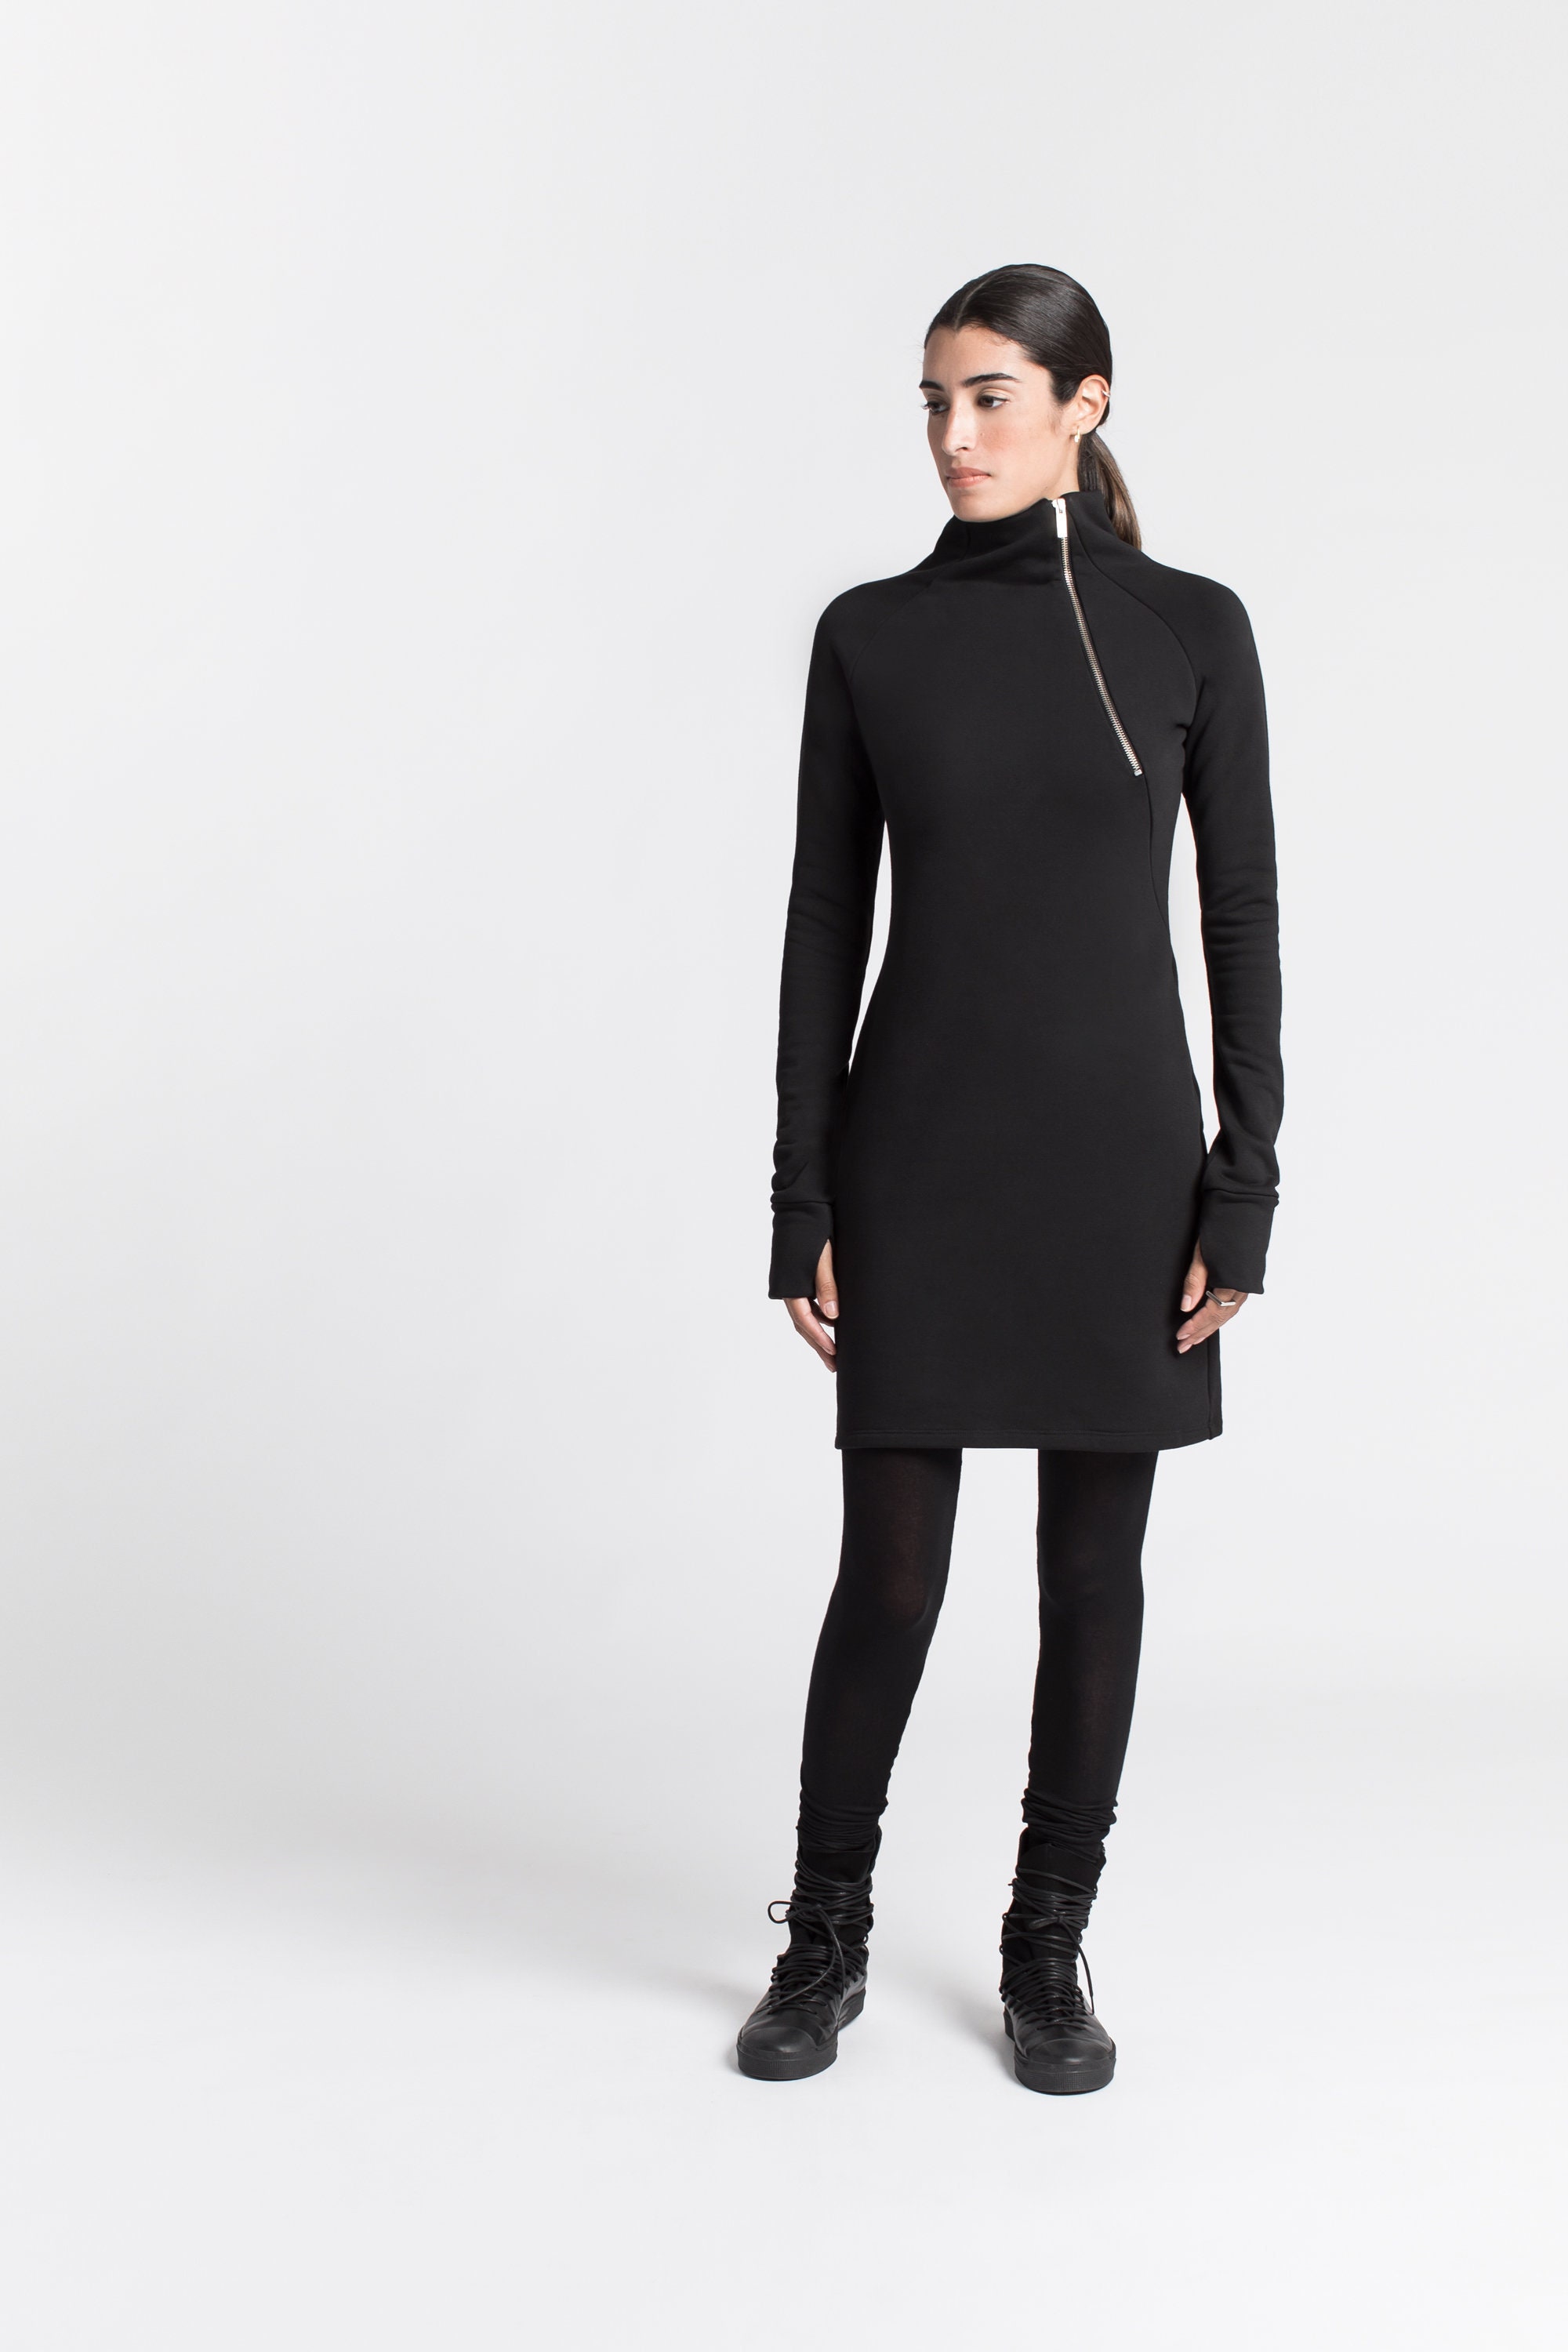 Black Dress, Sweatshirt Dress, MD1161 Etsy Dress, Sleeve Dress, - Sweatshirt Norway Winter Long Turtleneck Marcella Dress, Dress, Alani